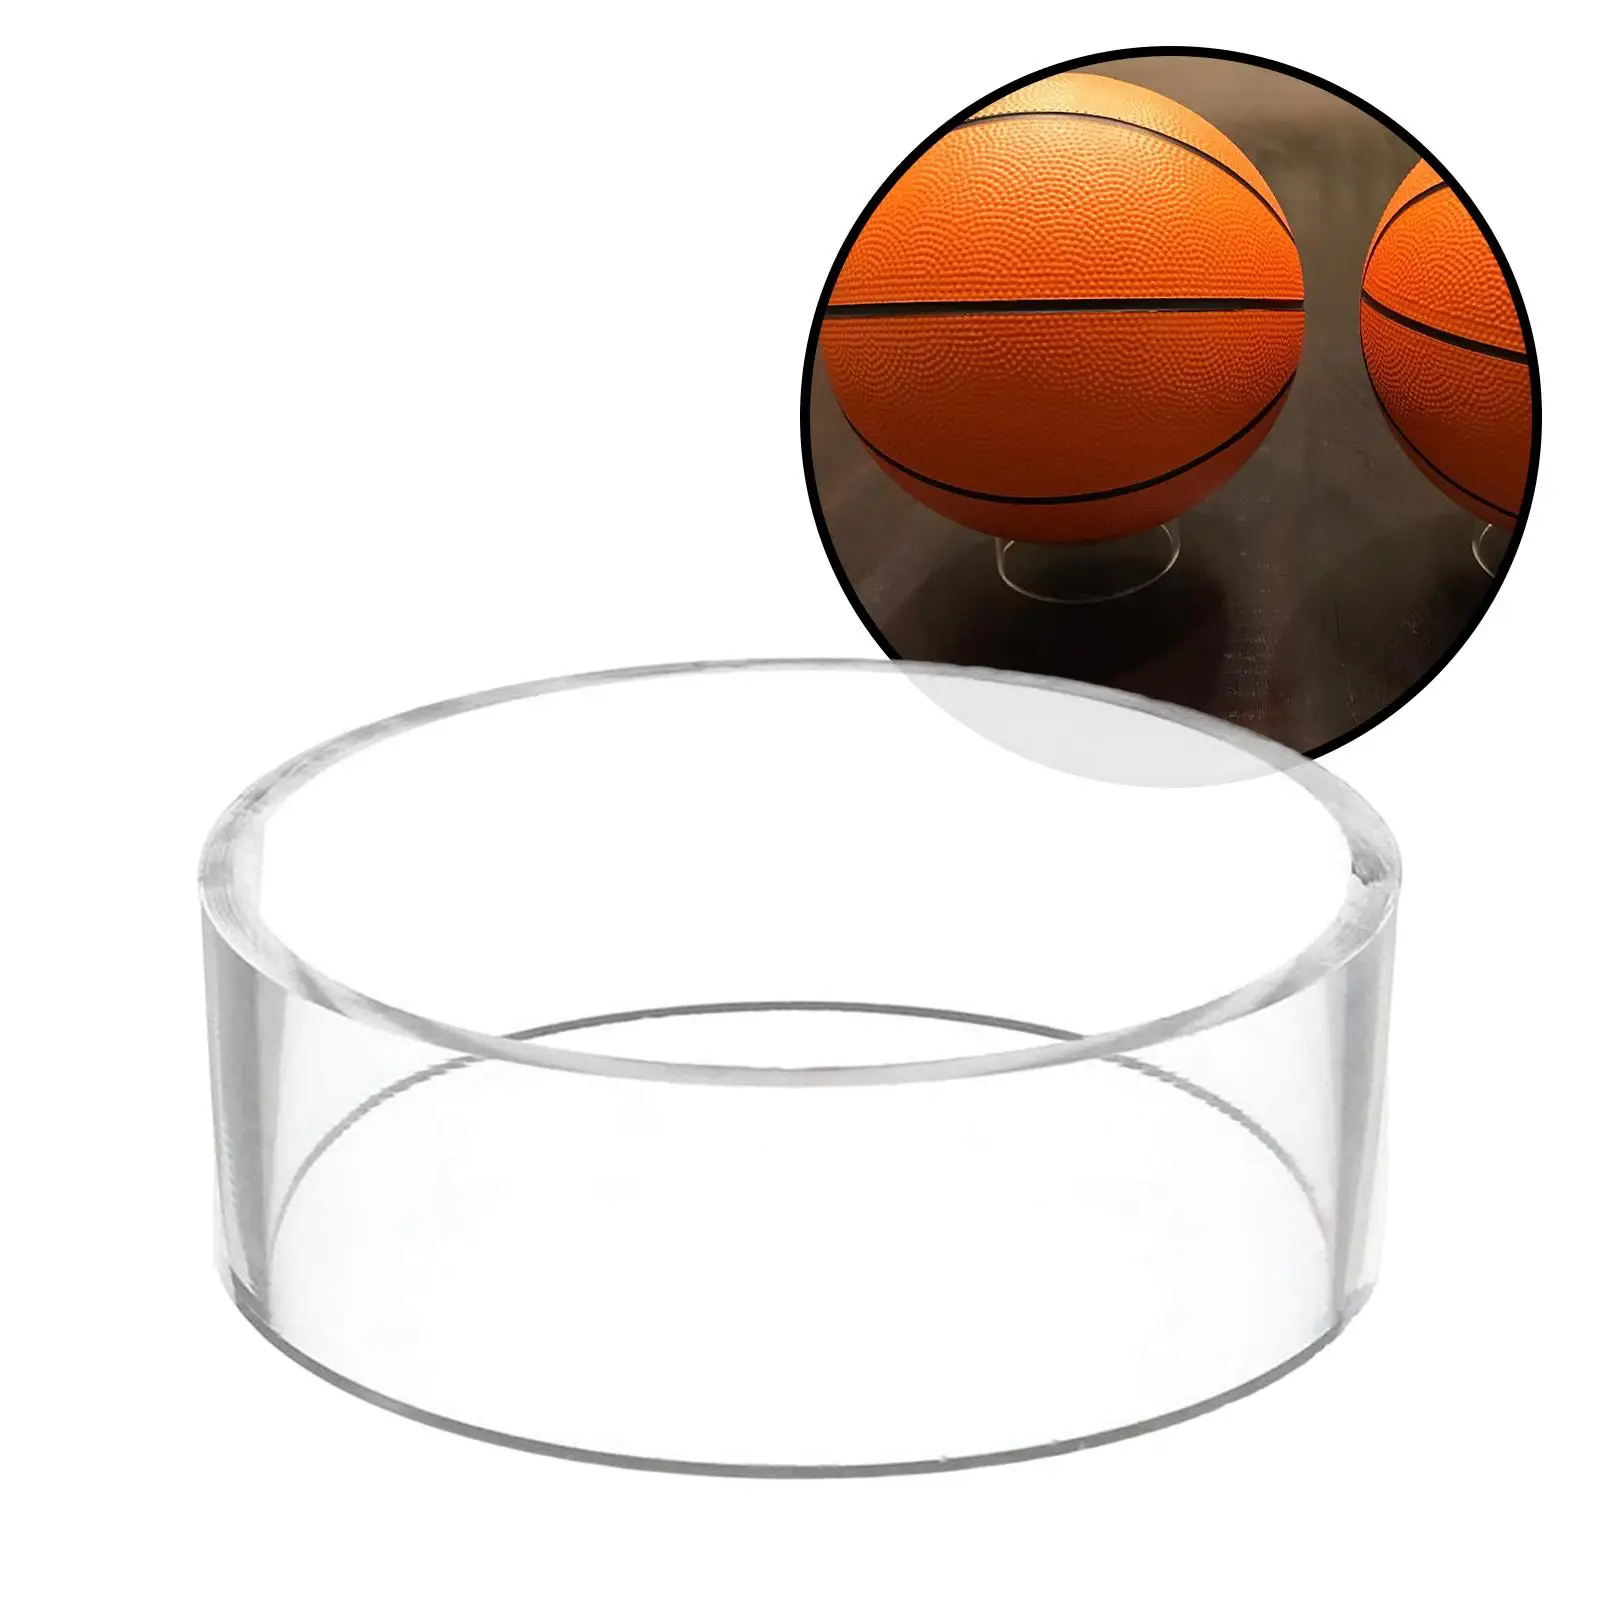 Acrylic Ball Display Holder Rack Pedestal for Basketball Bowling Baseball